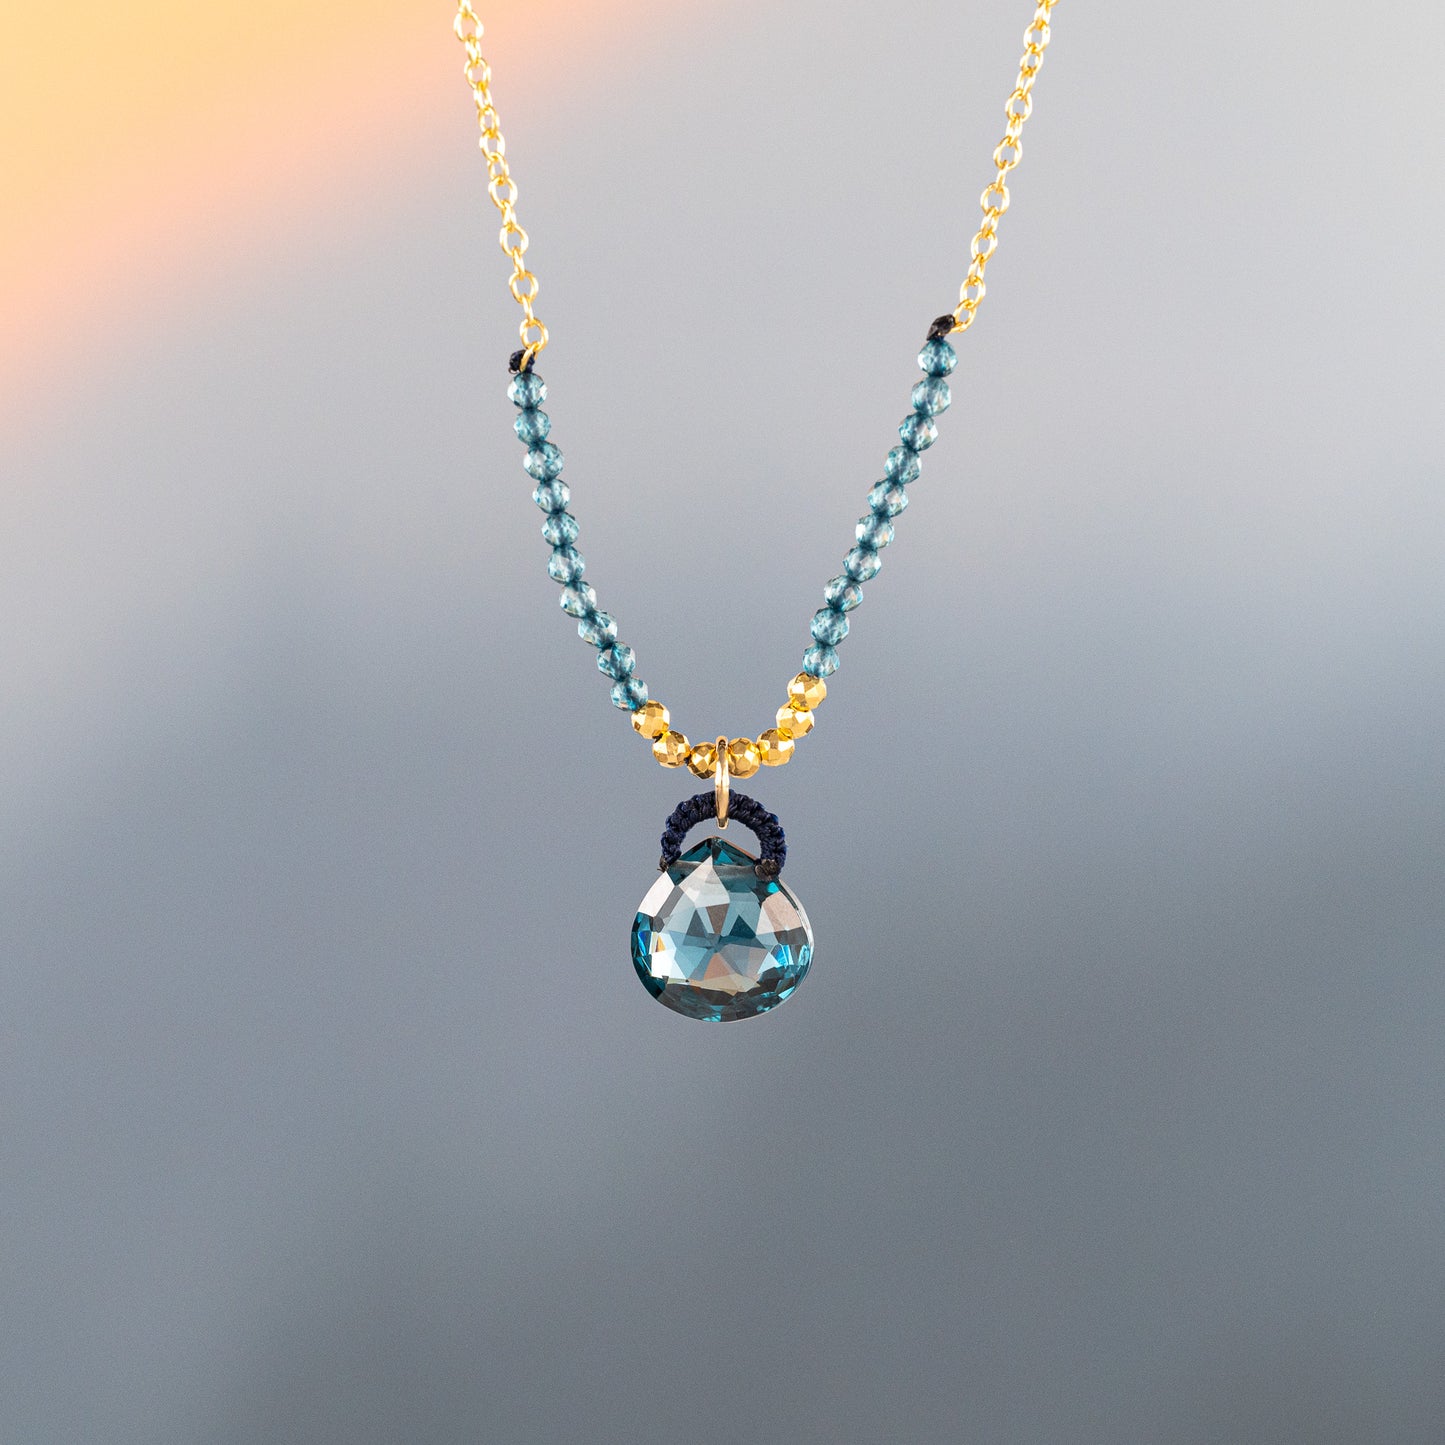 Danielle Welmond London Blue Quartz Drop Necklace with Petite London Blue Quartz Accent Beads